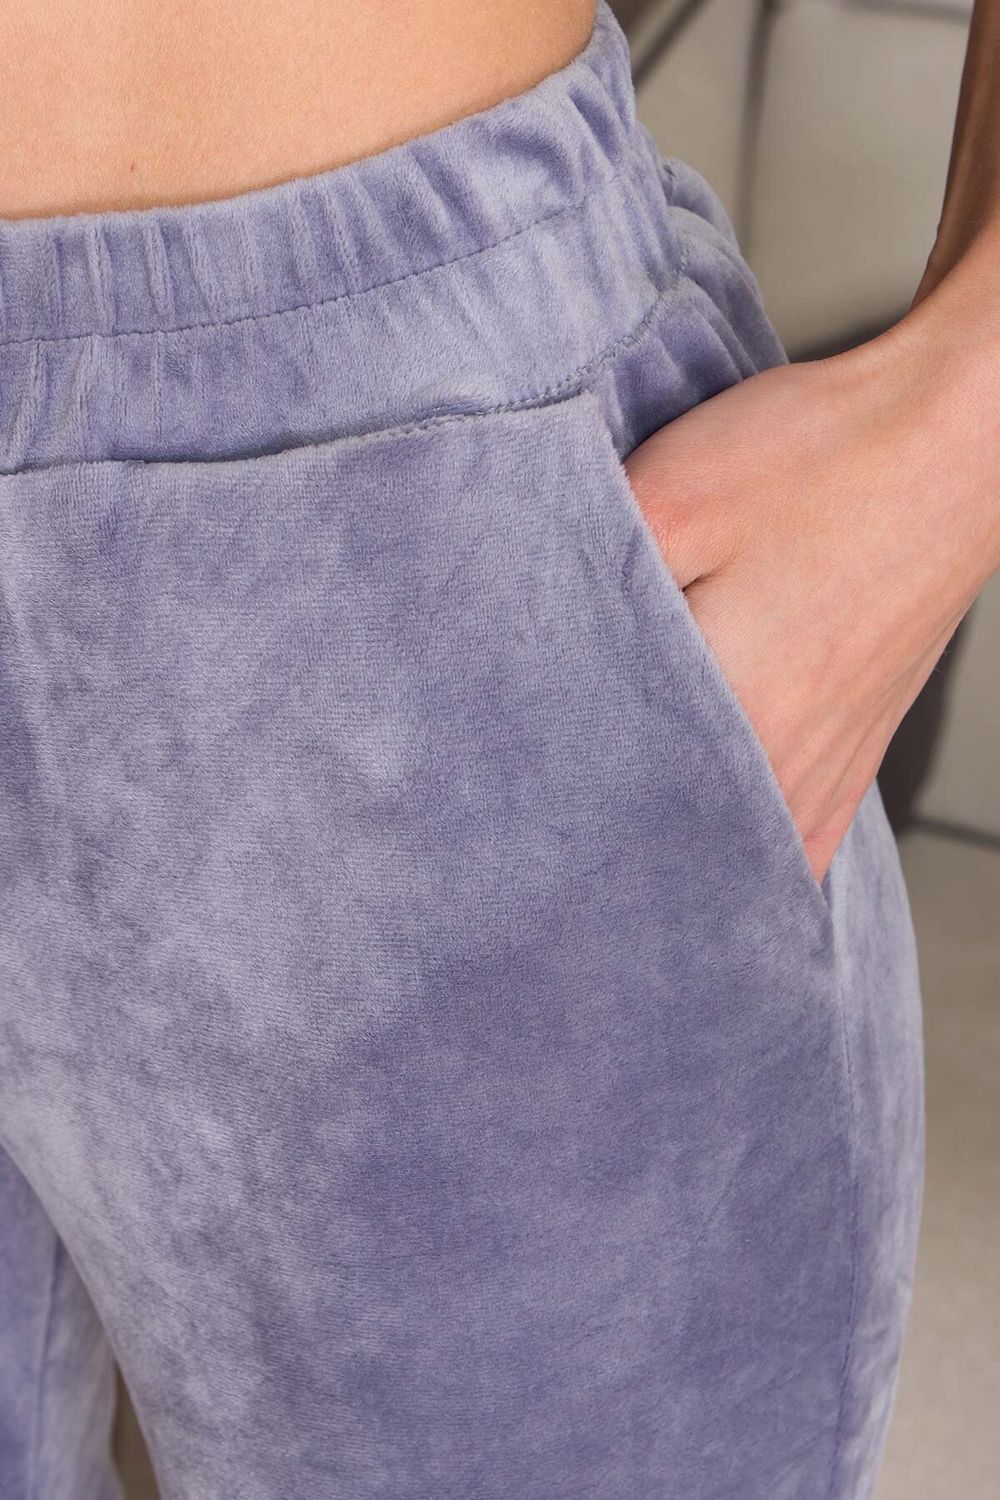 Женские пижамные штаны домашние велюровые - фото